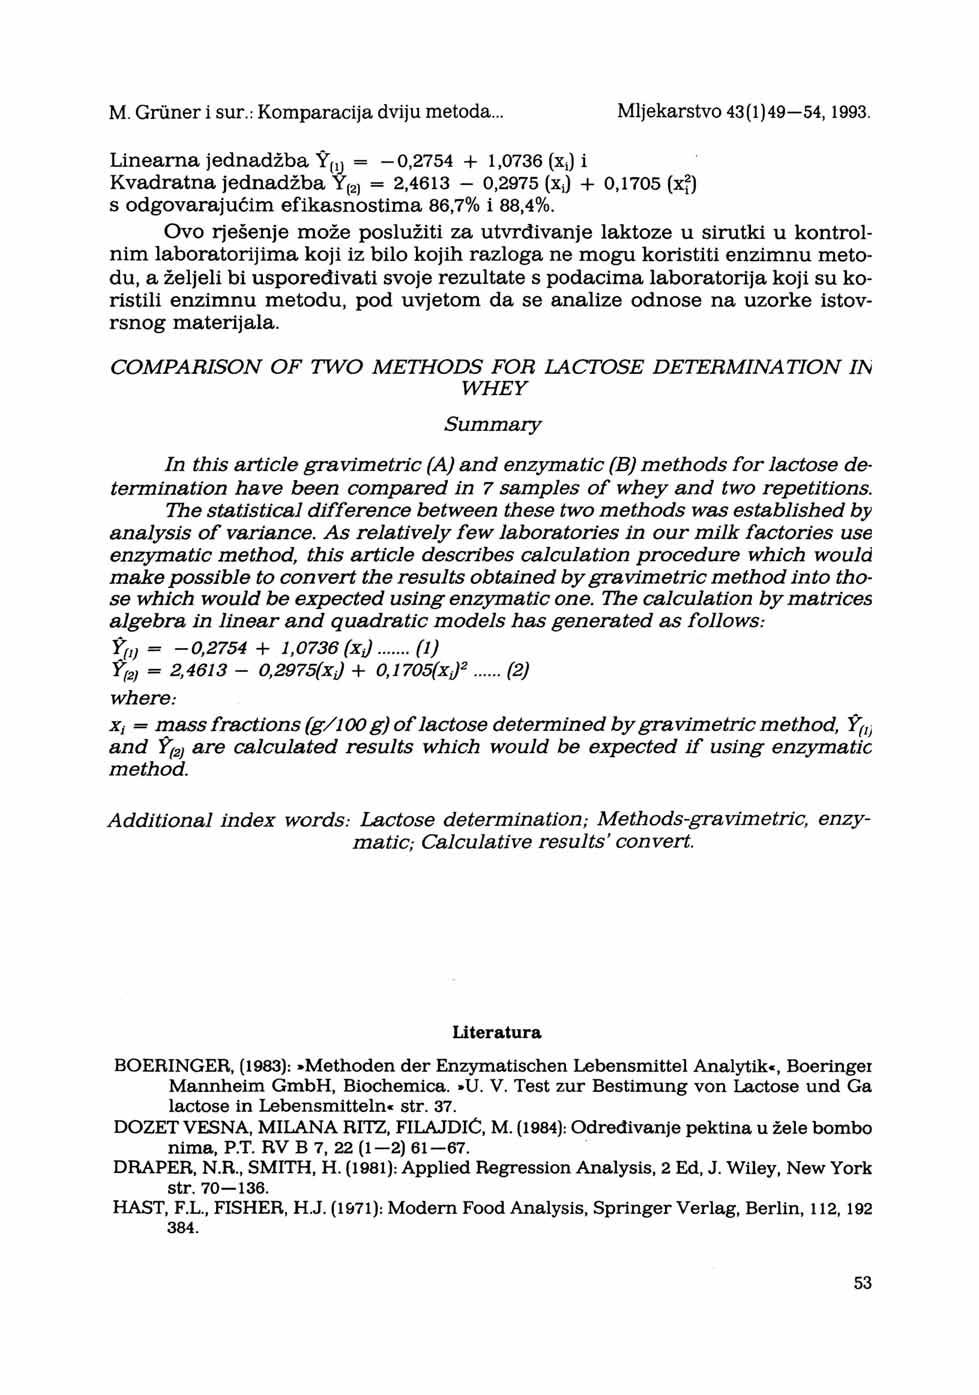 M. Grüner i sur.: Komparacija dviju metoda... Mljekarstvo 43(1)49 54,1993.